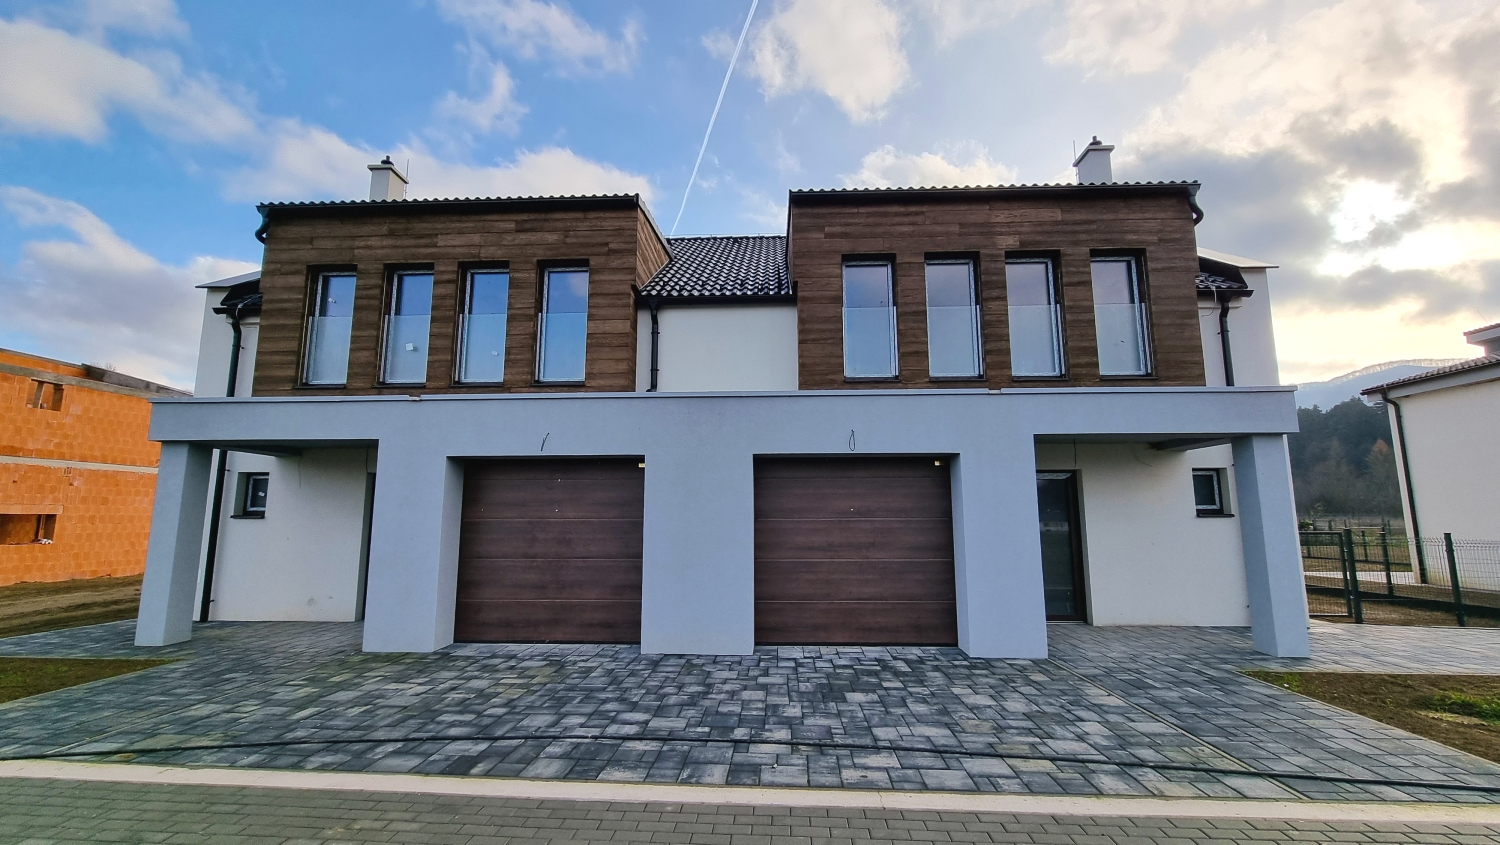 Štýlový 4-izbový rodinný dom s garážou, dvojdom, krásne prostredie, predaj, Púchov - Beluša, Cena: 278.000,- €.